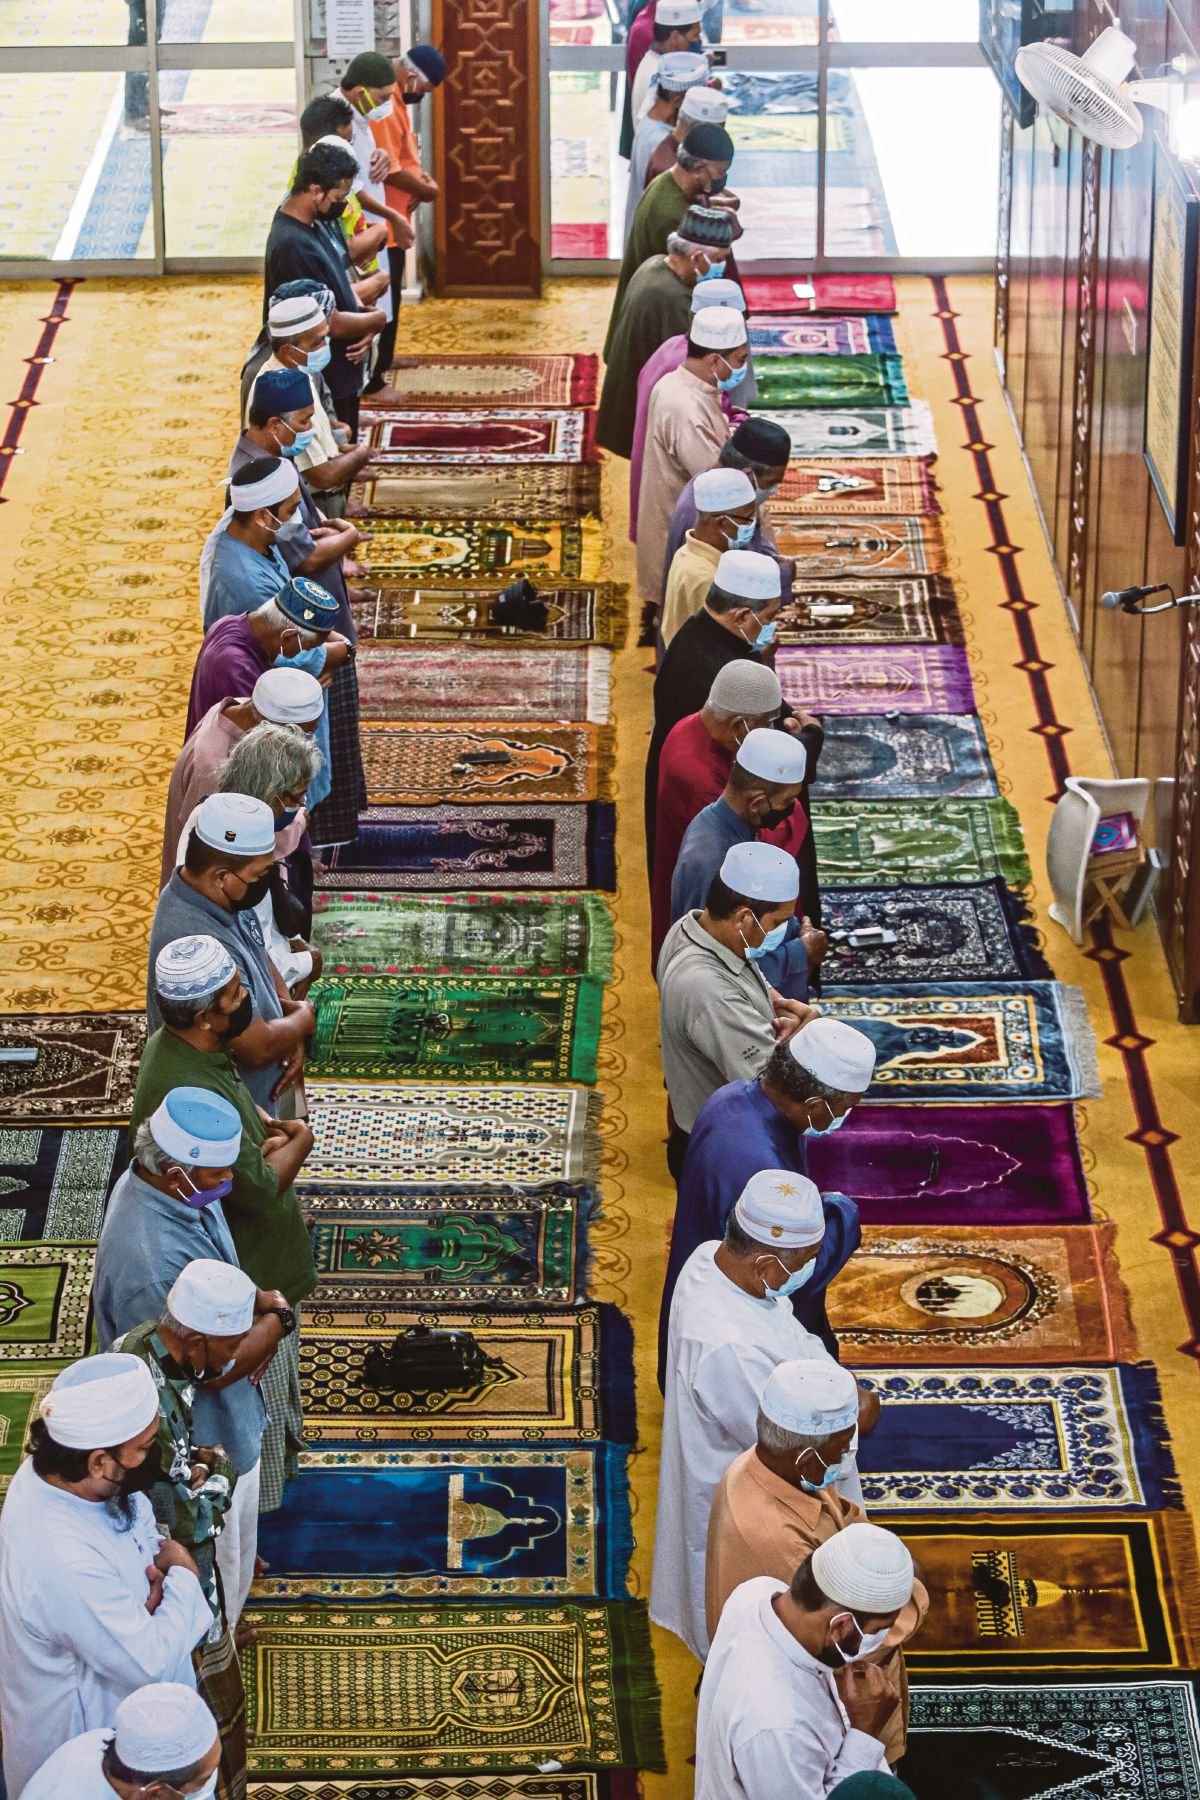 PERBANYAKKAN amal soleh sepanjang Rejab sebelum tibanya Ramadan.